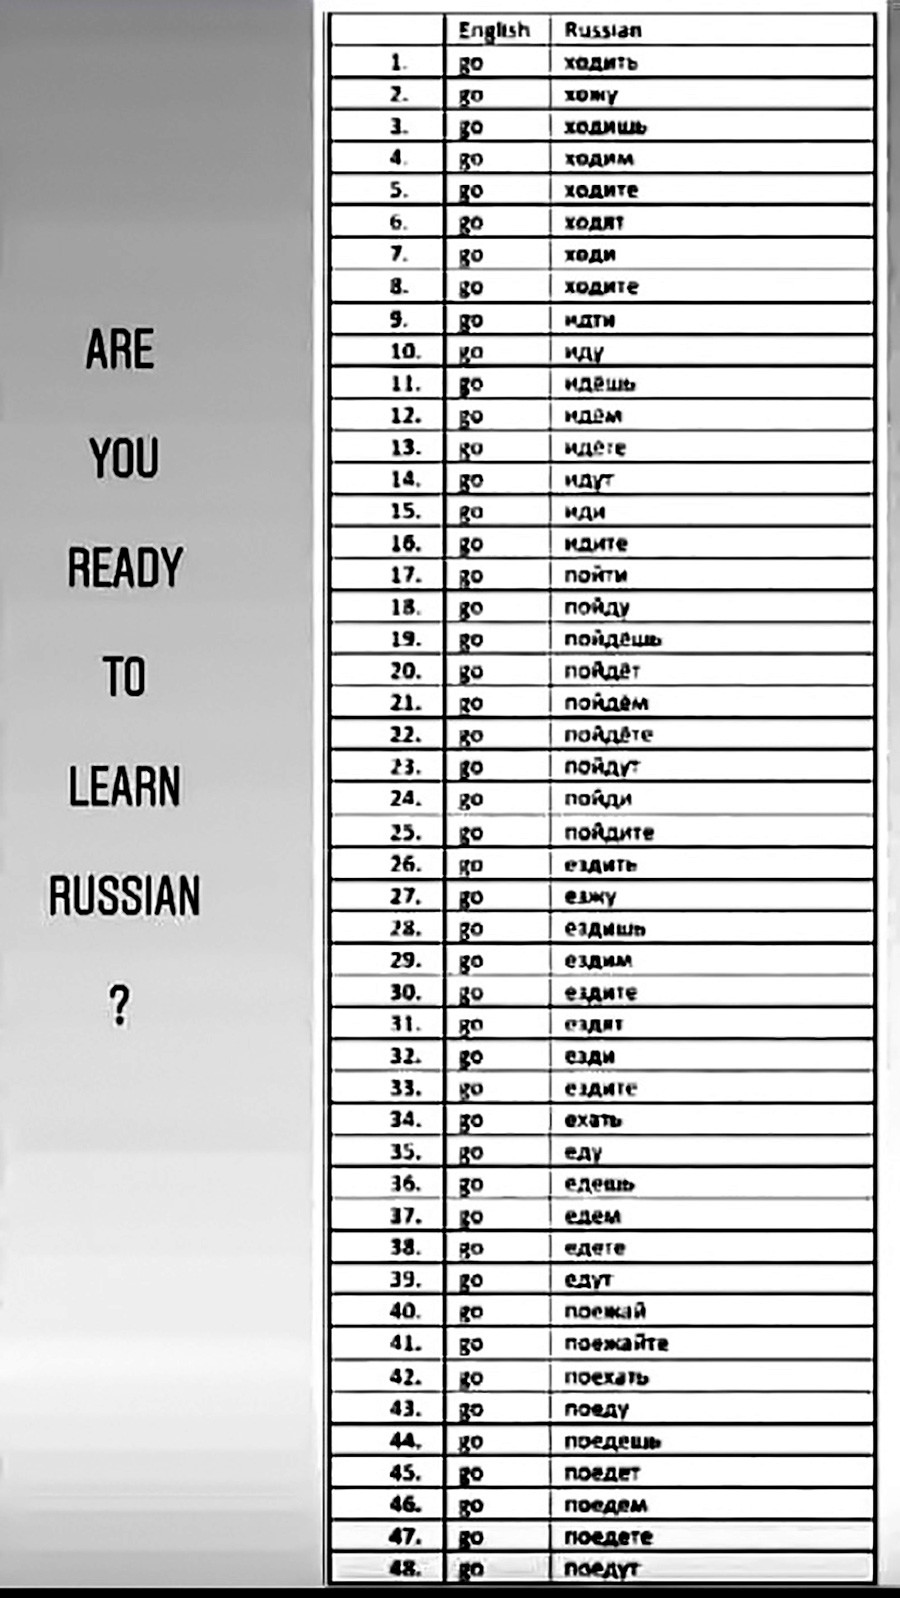 ロシア語学習は時間の無駄か ロシア ビヨンド